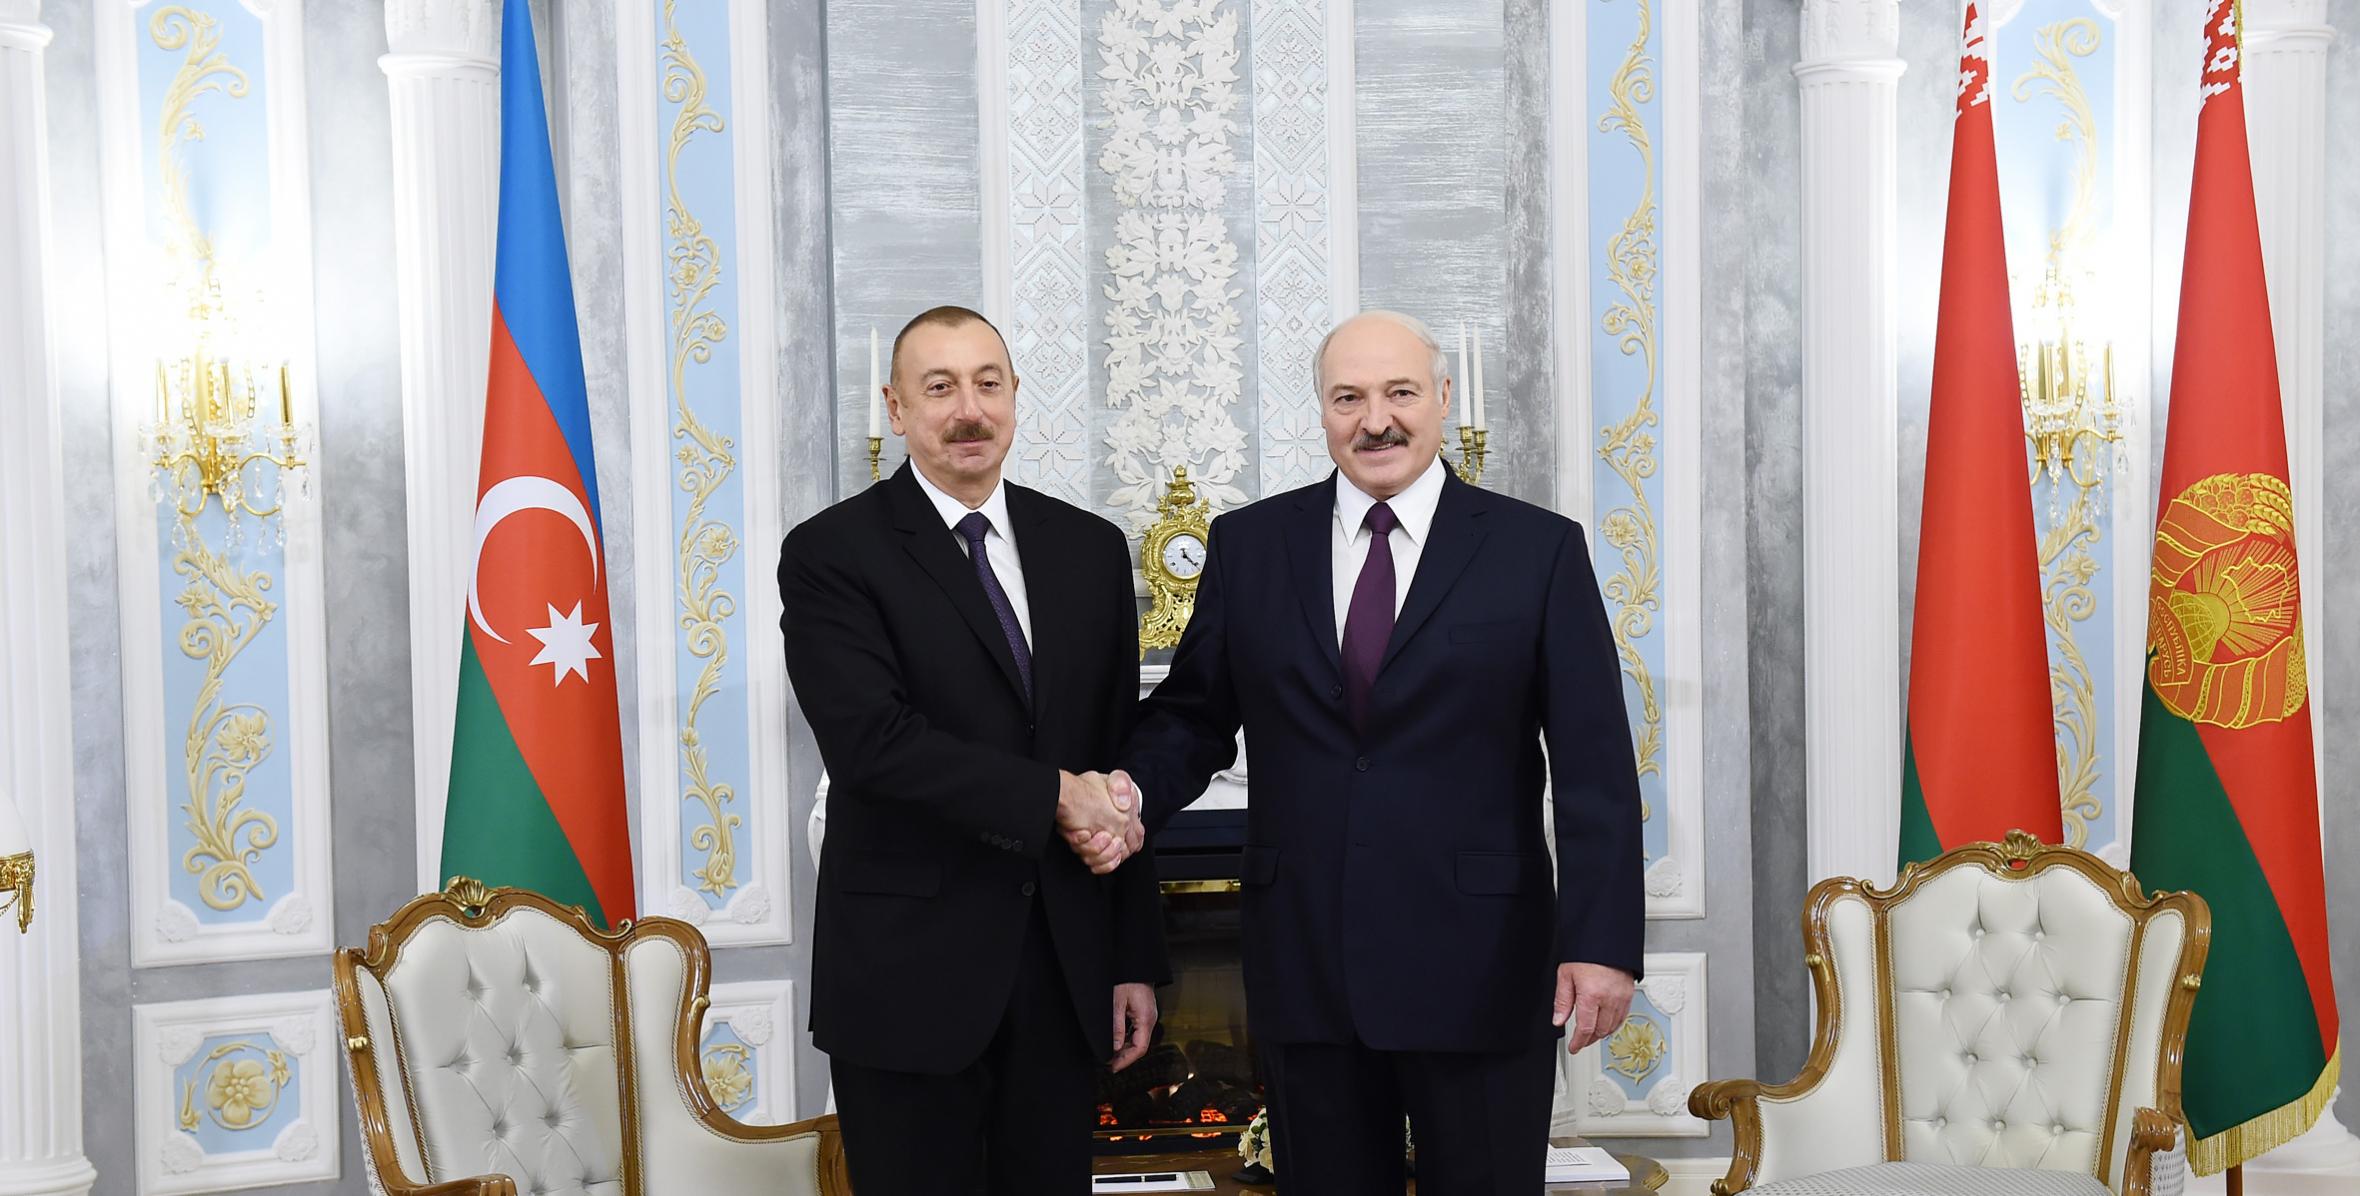 İlham Əliyevin və Belarus Prezidenti Aleksandr Lukaşenkonun təkbətək görüşü olub